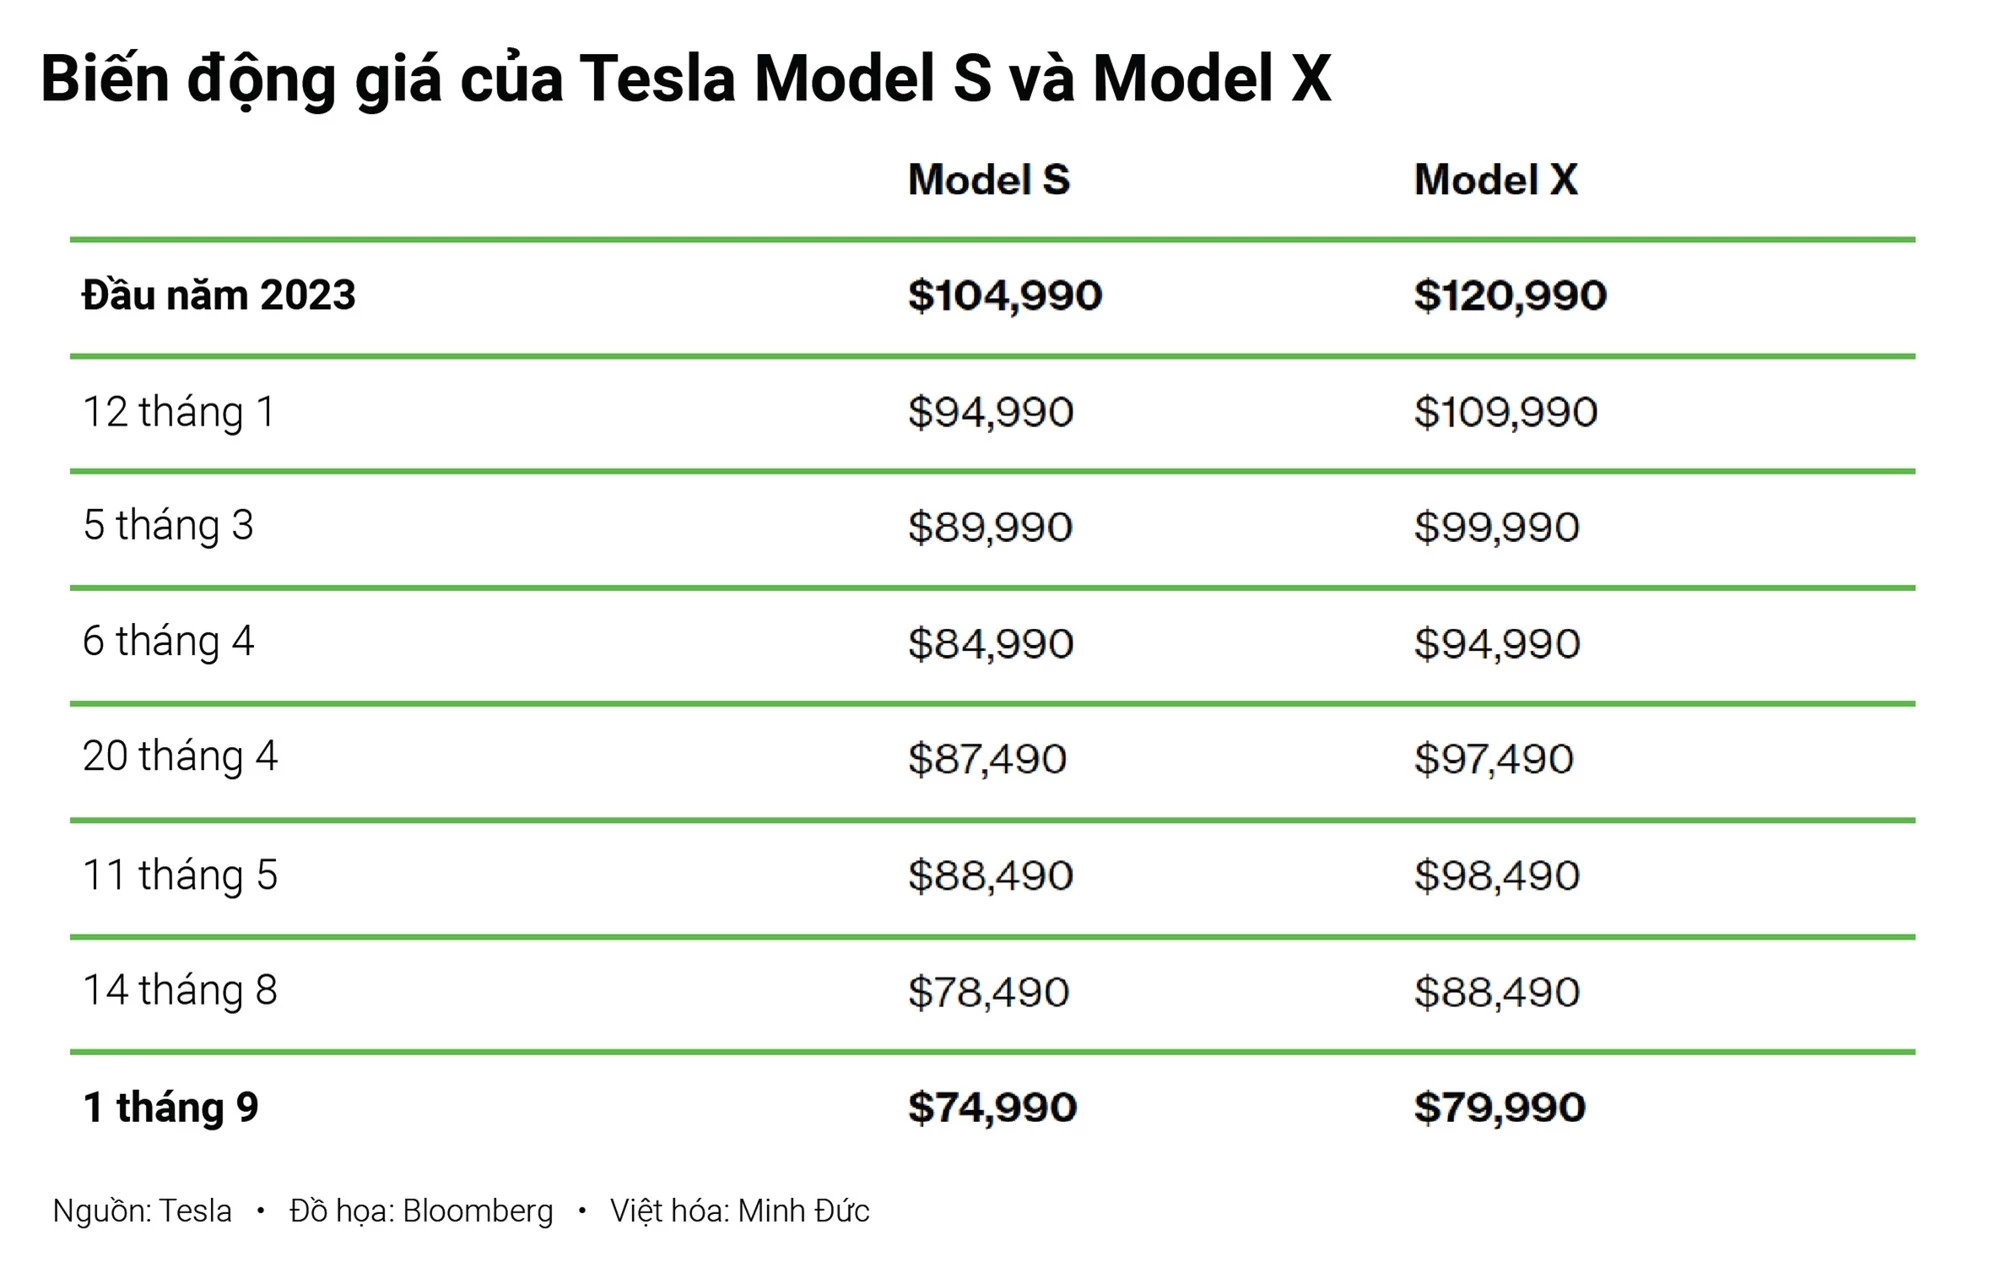 Tesla điên cuồng giảm giá, có mẫu giảm 1 tỷ đồng: Hóa ra vì chung mục tiêu với VinFast - Ảnh 1.